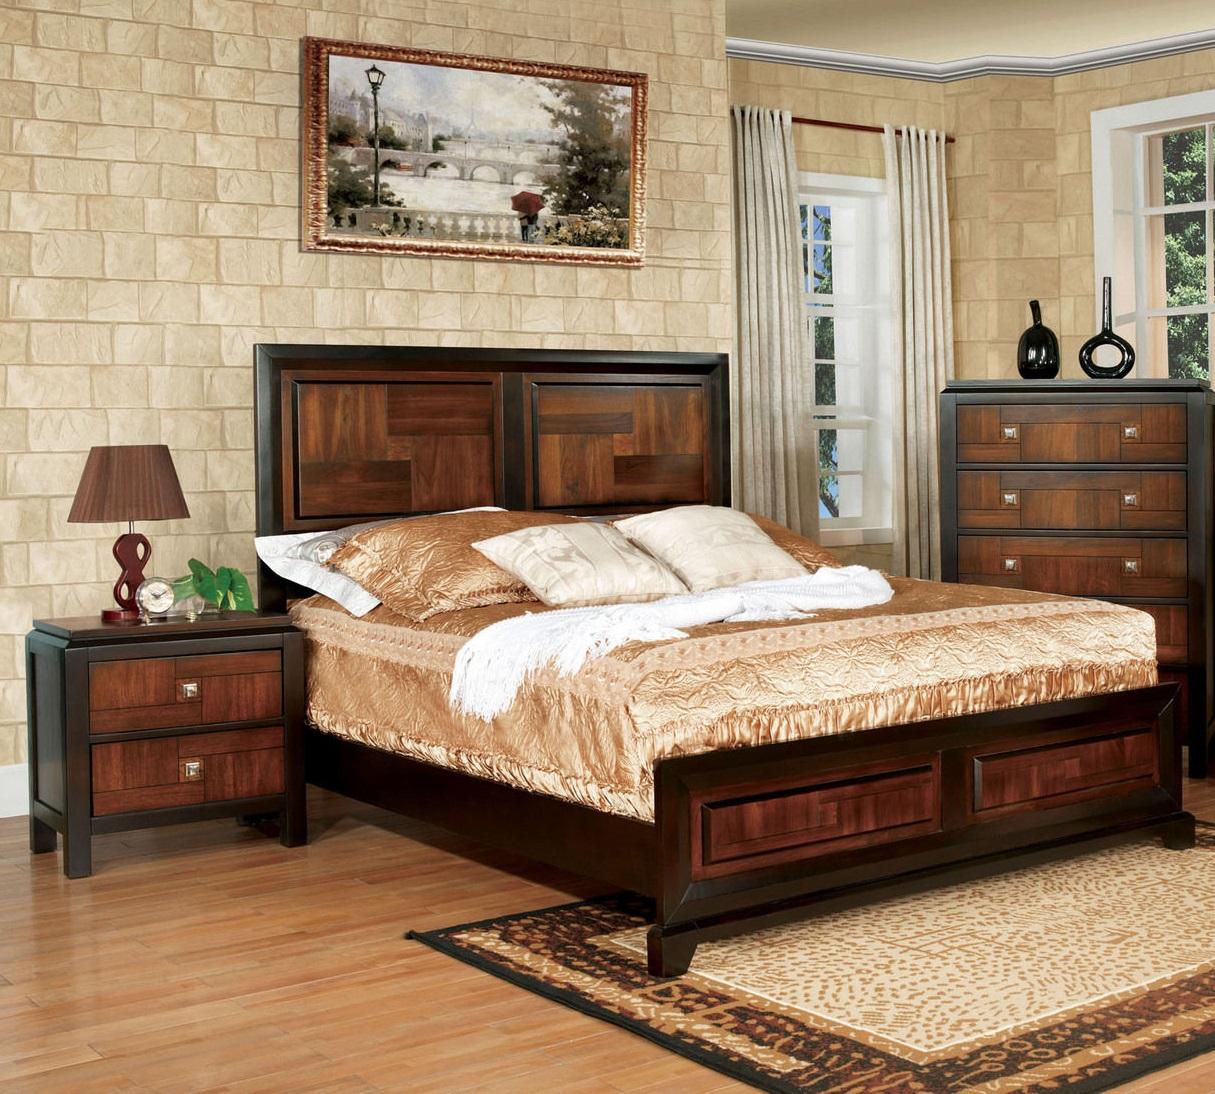 

    
Transitional Acacia & Walnut Solid Wood Queen Bedroom Set 3pcs Furniture of America CM7152-Q Patra
